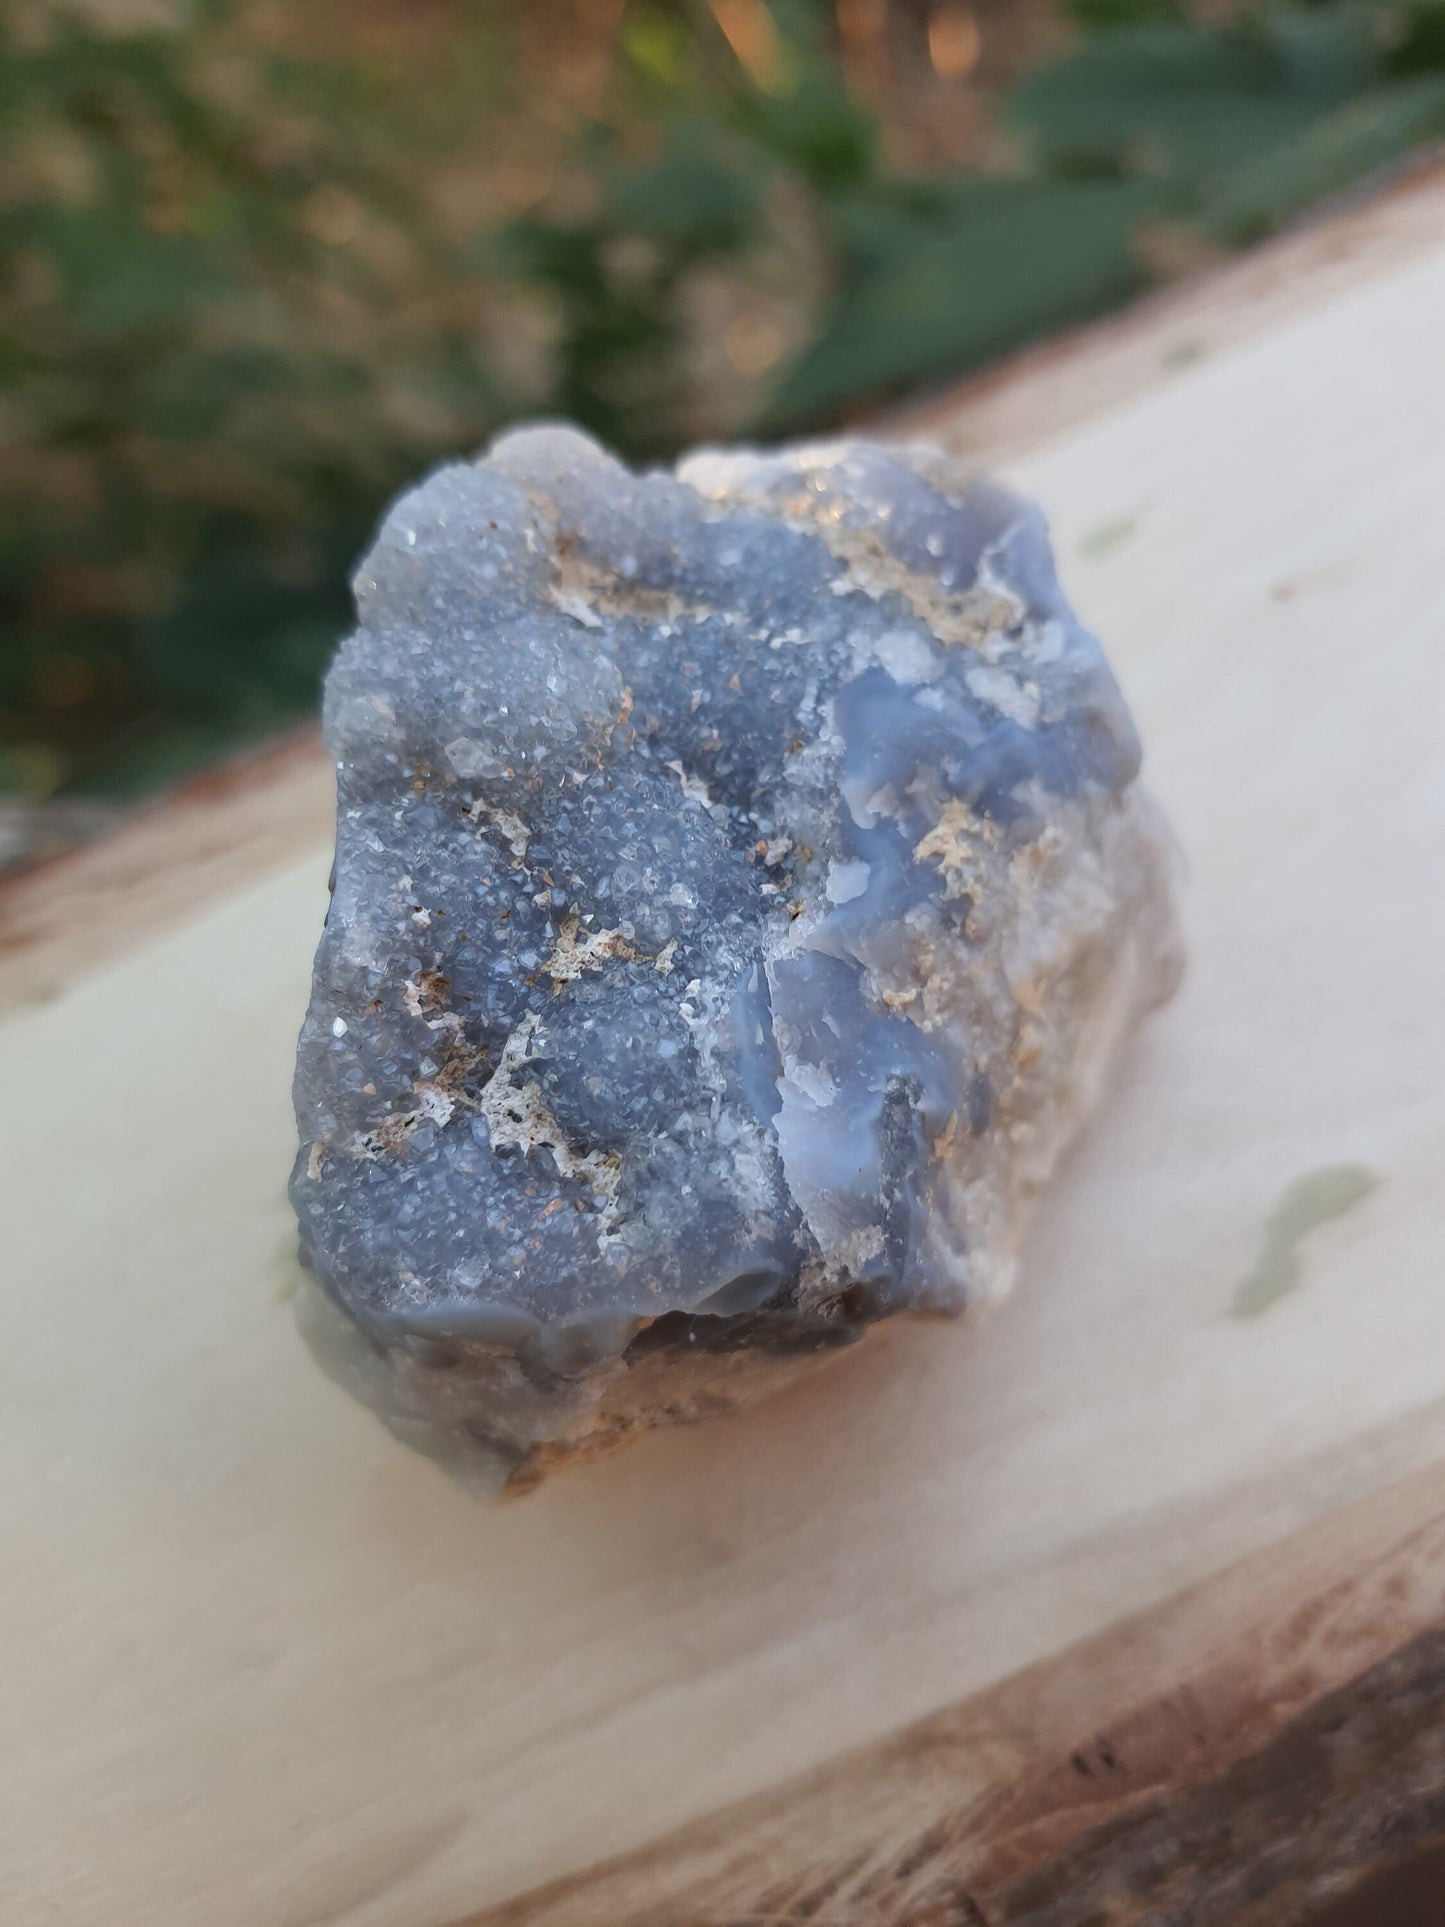 Blue Lace Agate Cluster, 113g Druzy Blue Lace Agate Geode, Sparkly blue Lace Agate, Blue Agate Crystal, Blue Lace Agate, Raw Crystal Cluster